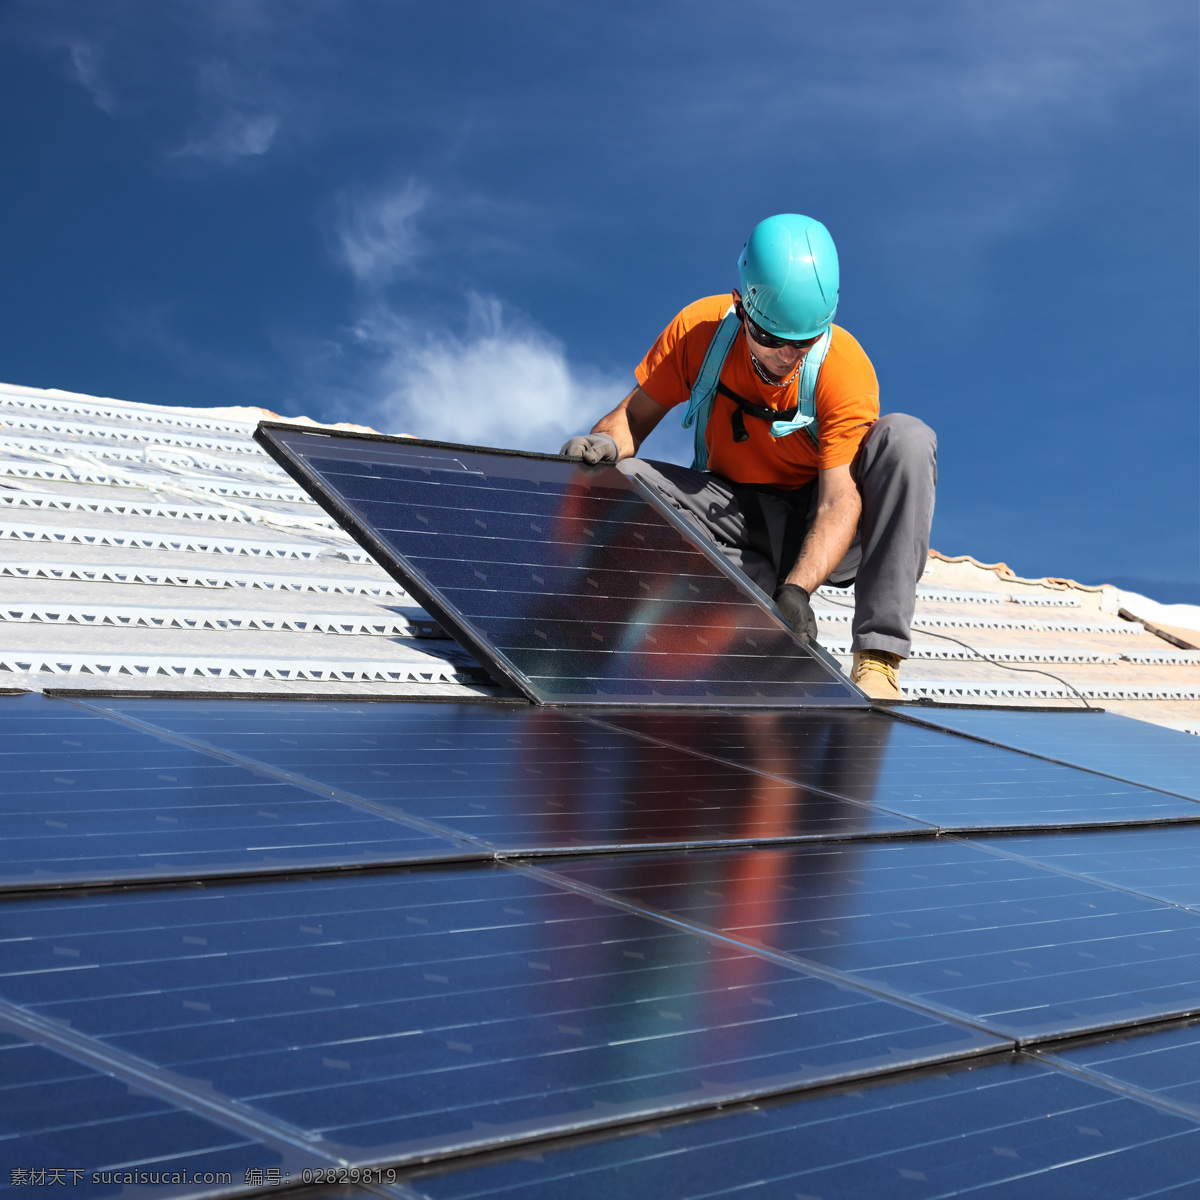 安装太阳能板 太阳能板 太阳能 蓝天白云 工人 光能源 绿色能源 绿色电力 环保 蓝天 白云 工业生产 现代科技 自可再生能源 现代工业 阳光 光线 再生能源 环保能源